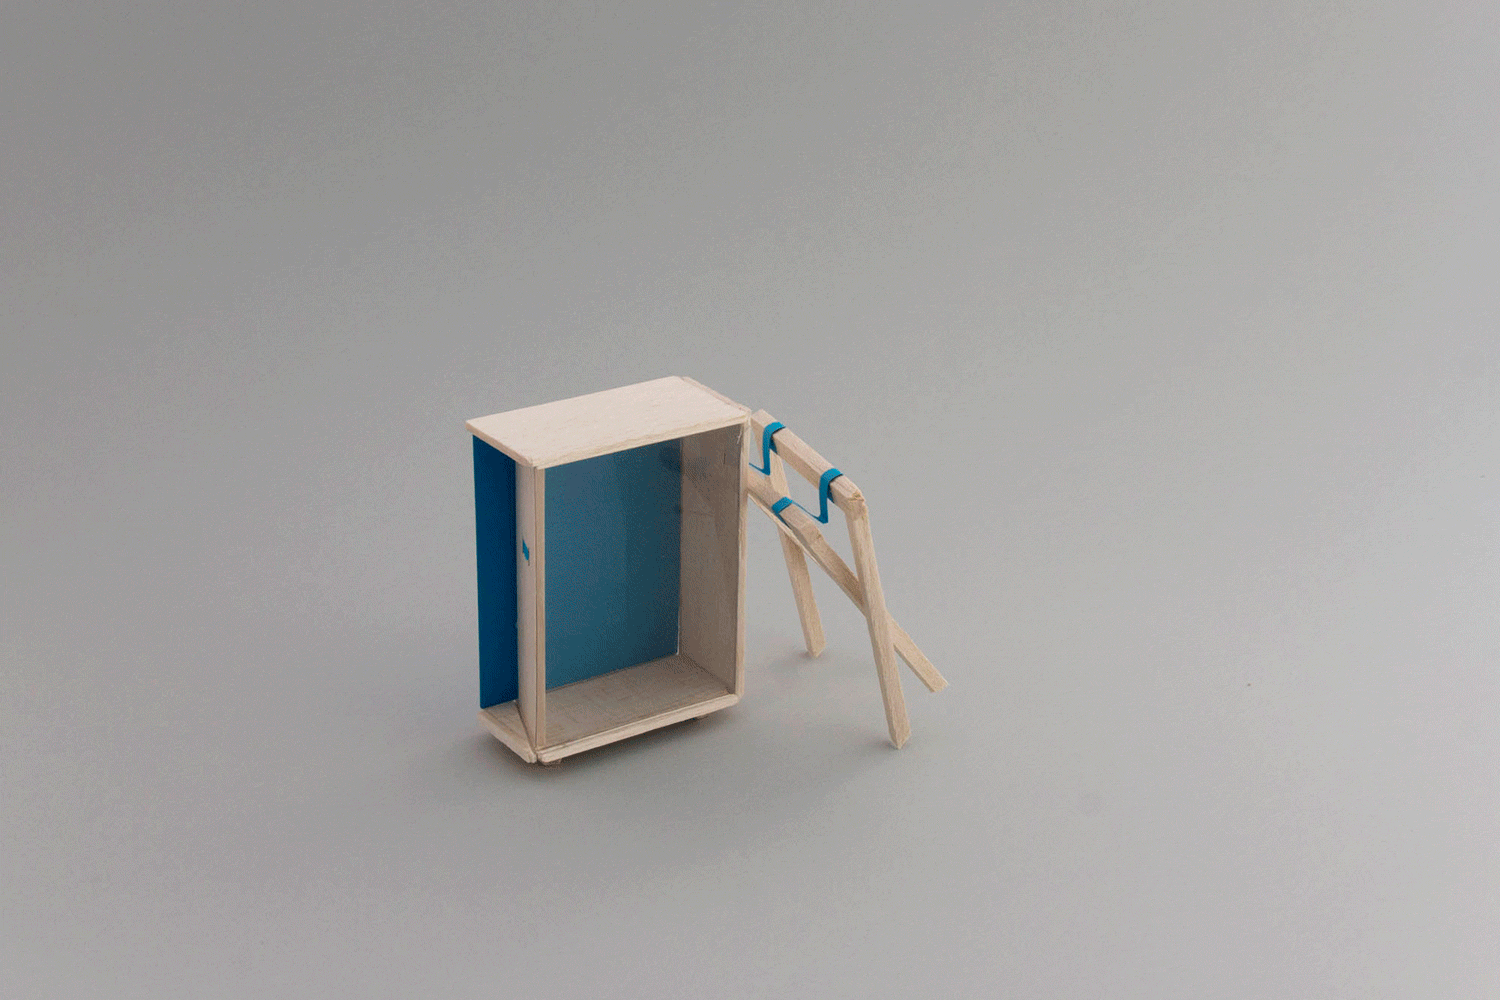 Gif animé de la maquette miniature de vitrine, montable et déployable avec des panneaux de textes qui fonctionnent comme des volets coulissants